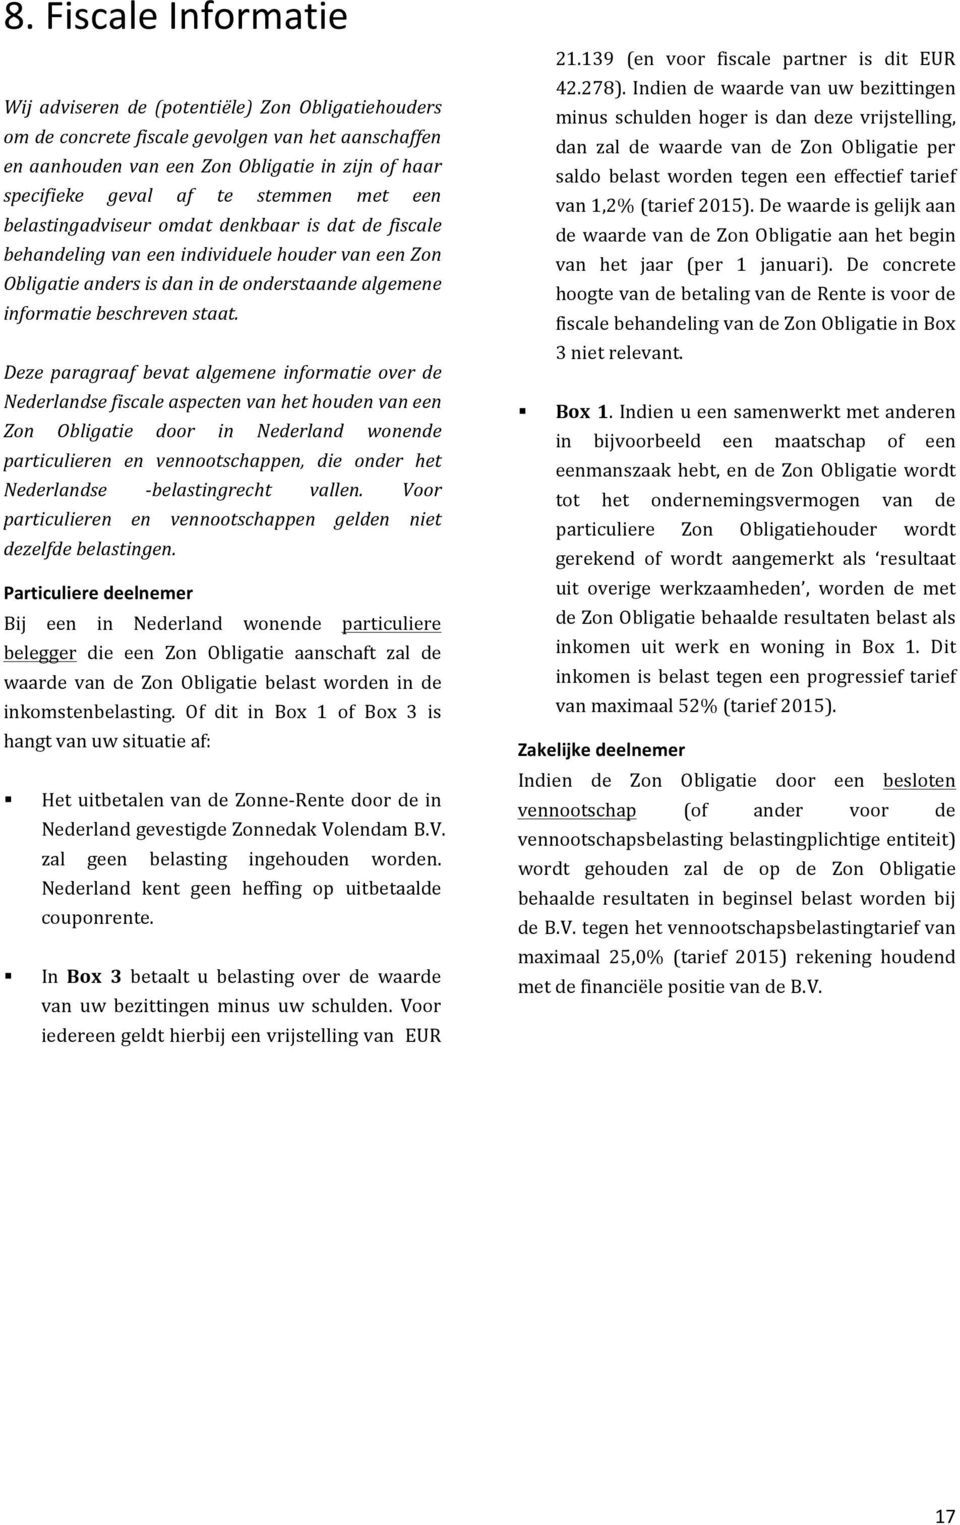 Deze paragraaf bevat algemene informatie over de Nederlandse fiscale aspecten van het houden van een Zon Obligatie door in Nederland wonende particulieren en vennootschappen, die onder het